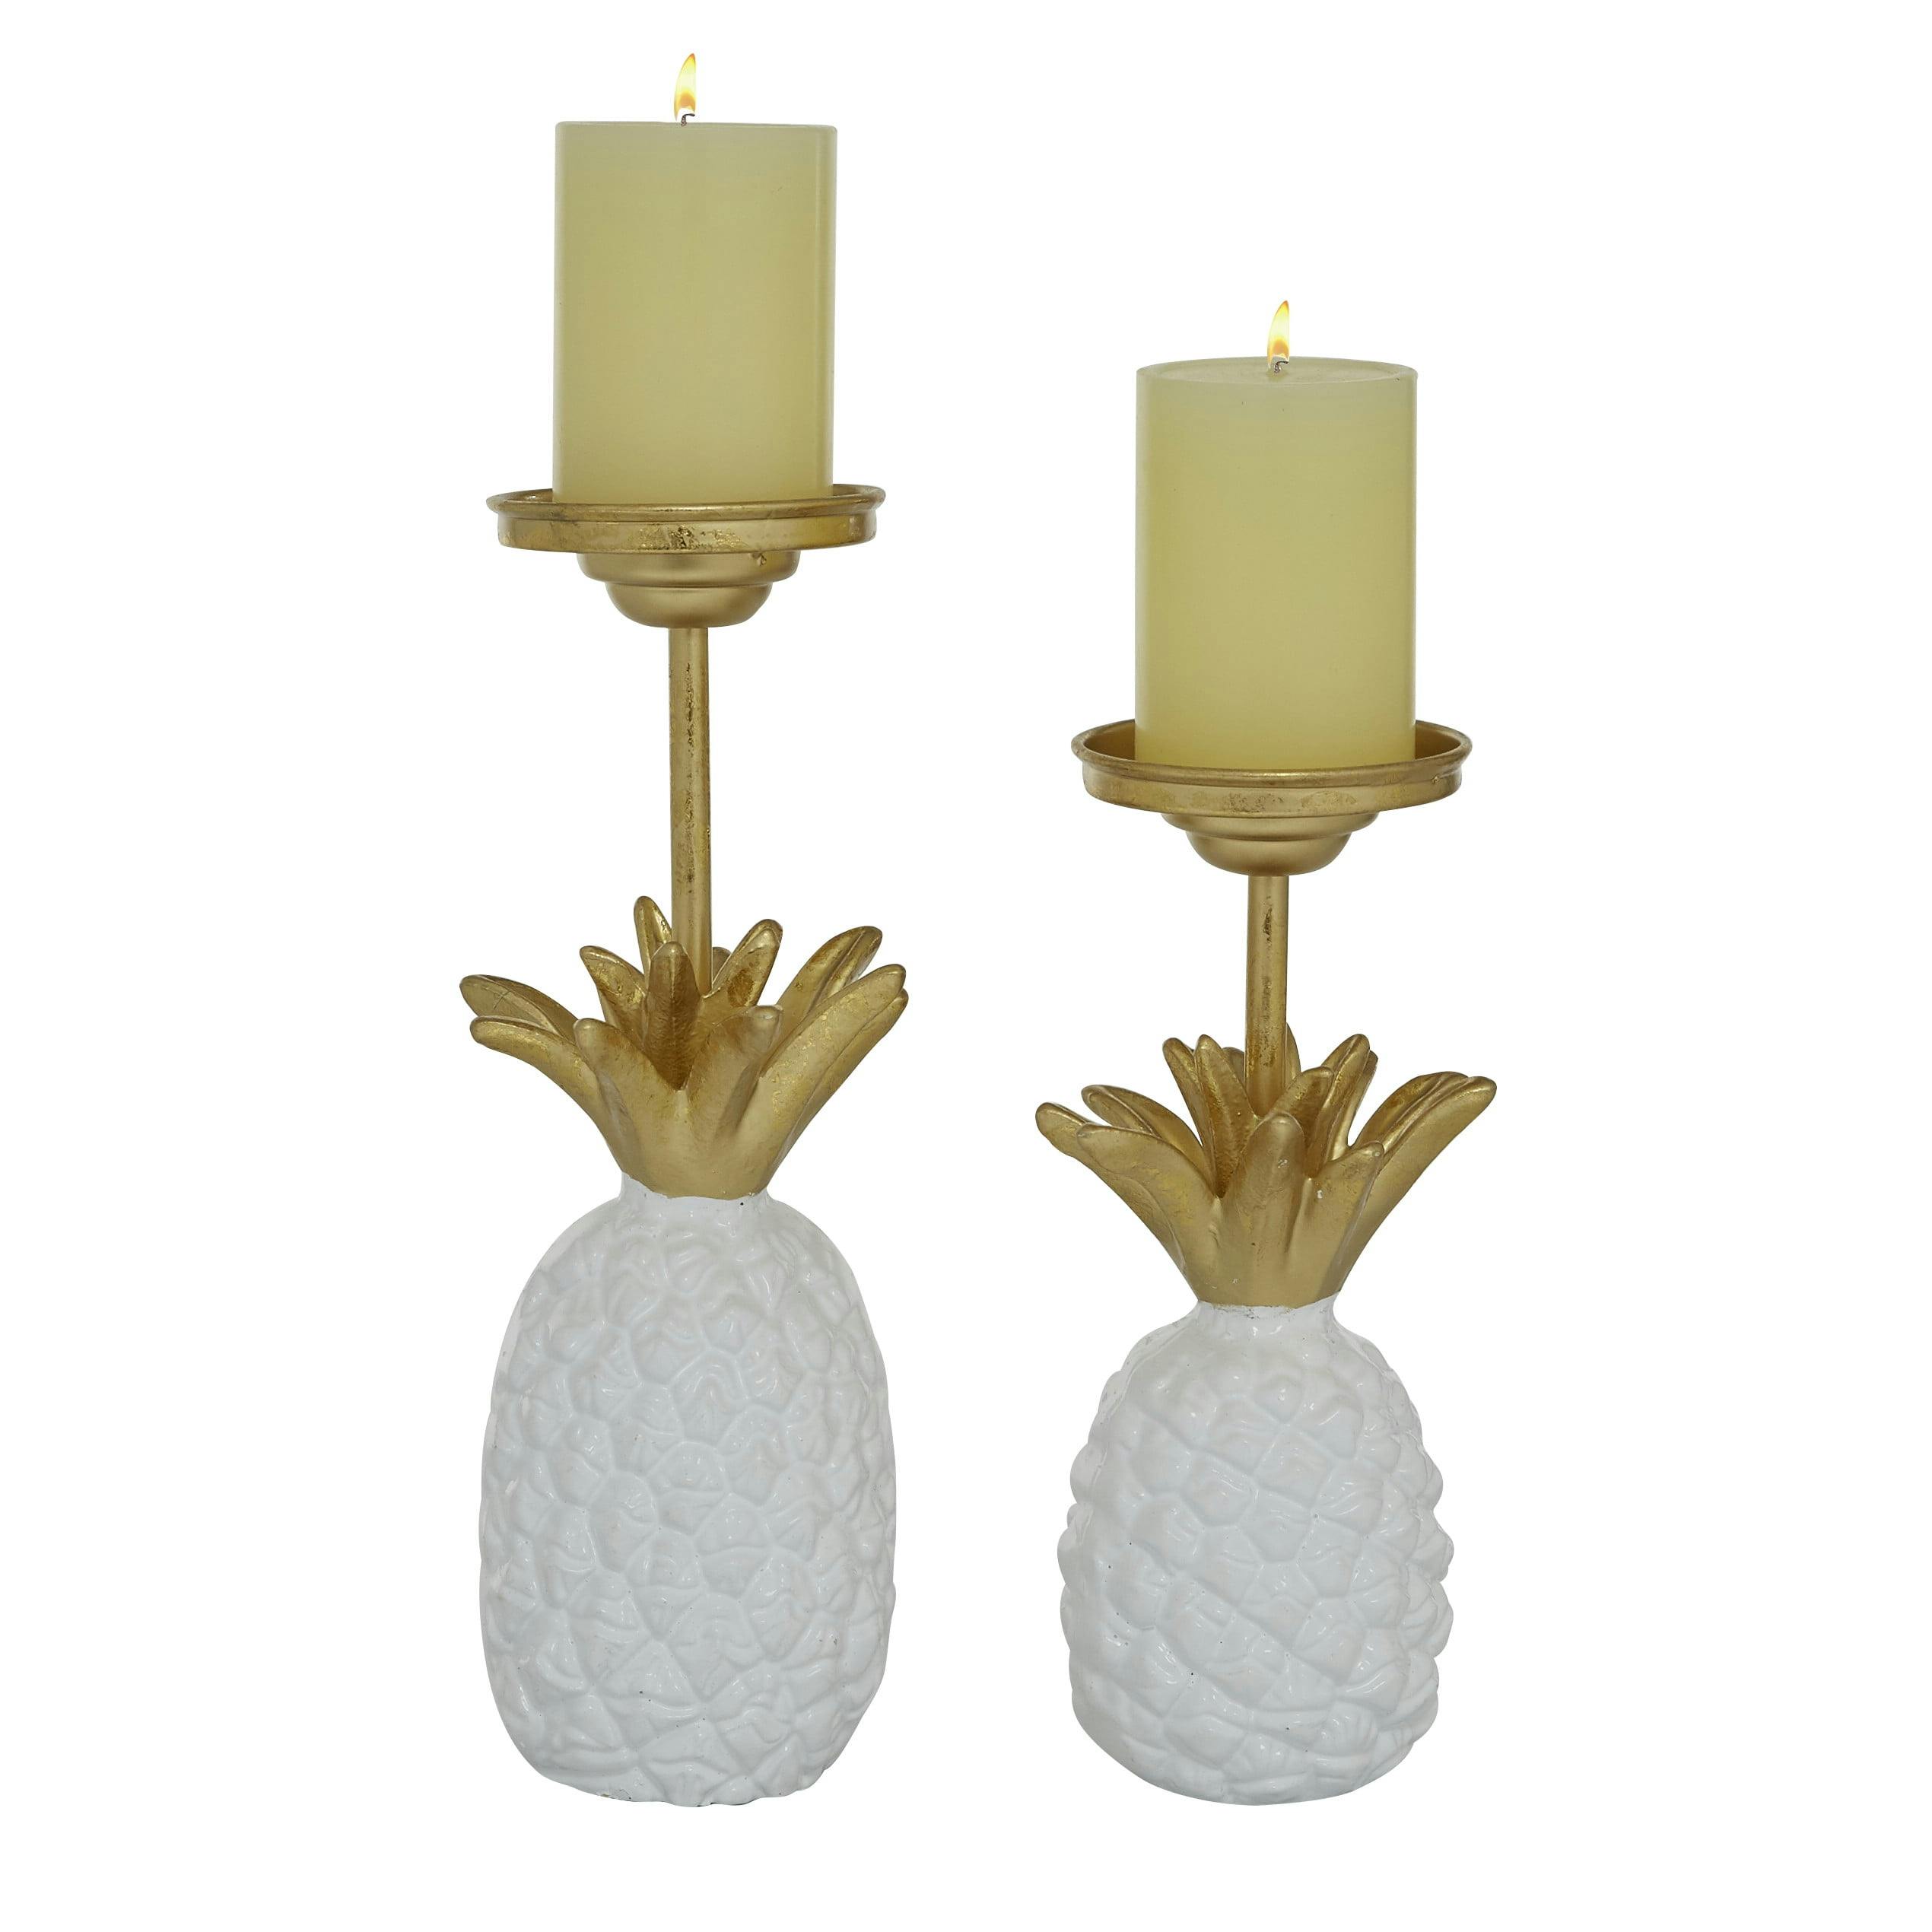 Elegant Pineapple Base White Iron Candlestick Set, 10" & 13"